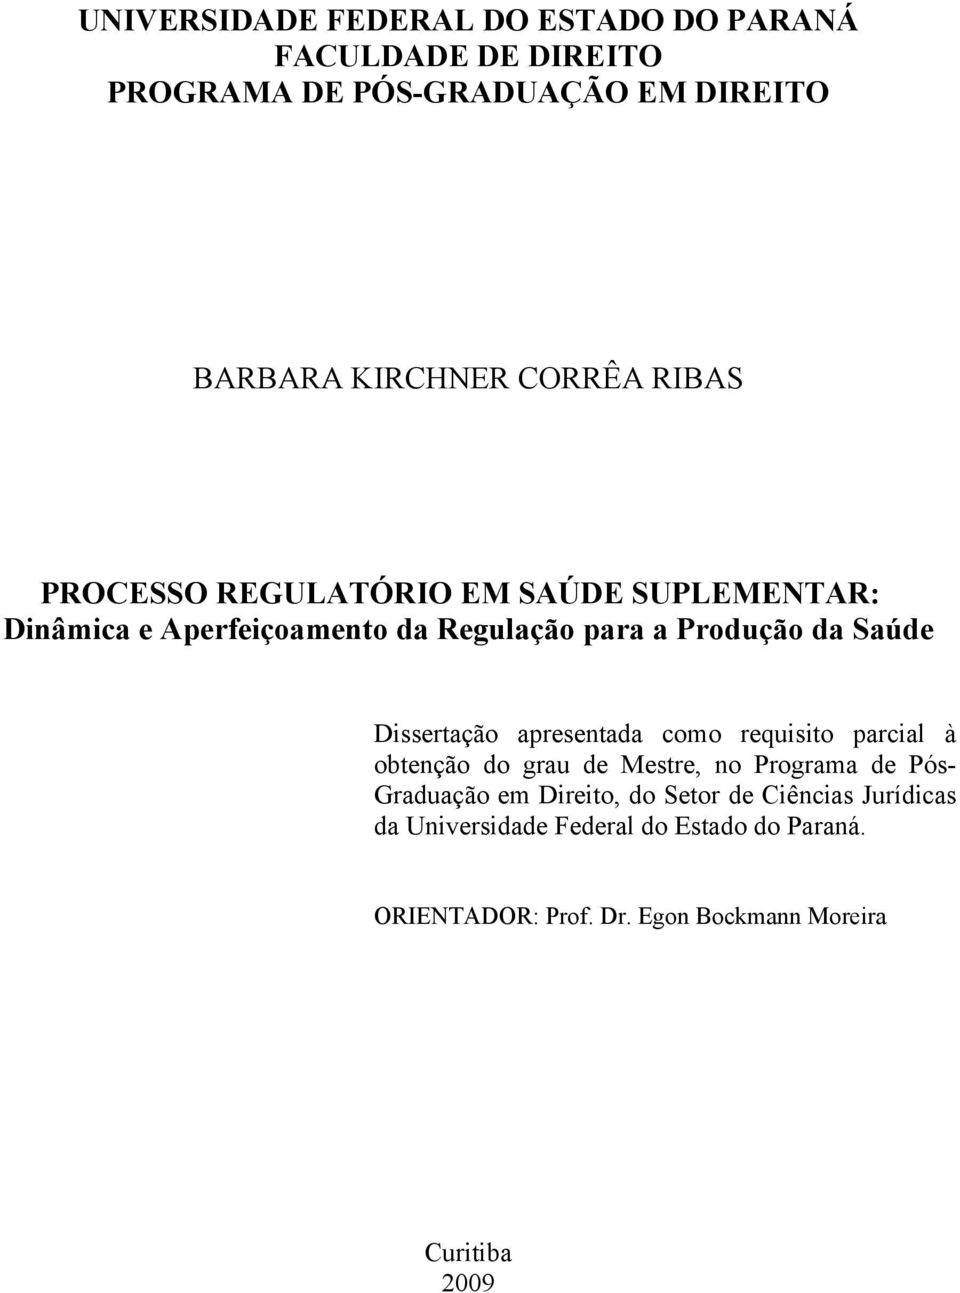 Dissertação apresentada como requisito parcial à obtenção do grau de Mestre, no Programa de Pós- Graduação em Direito, do